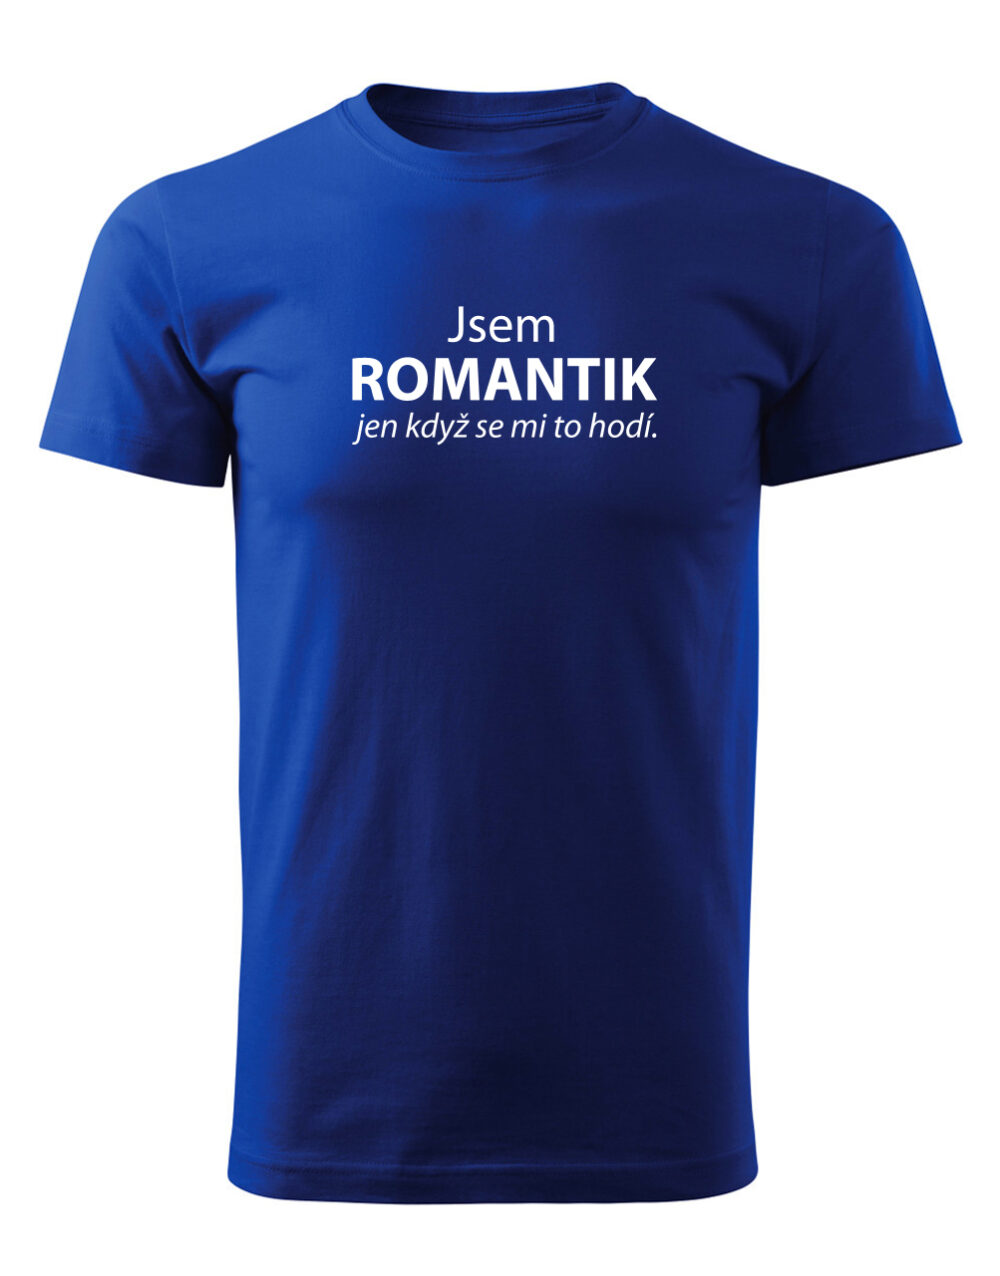 Pánské tričko s potiskem Jsem romantik královská modrá